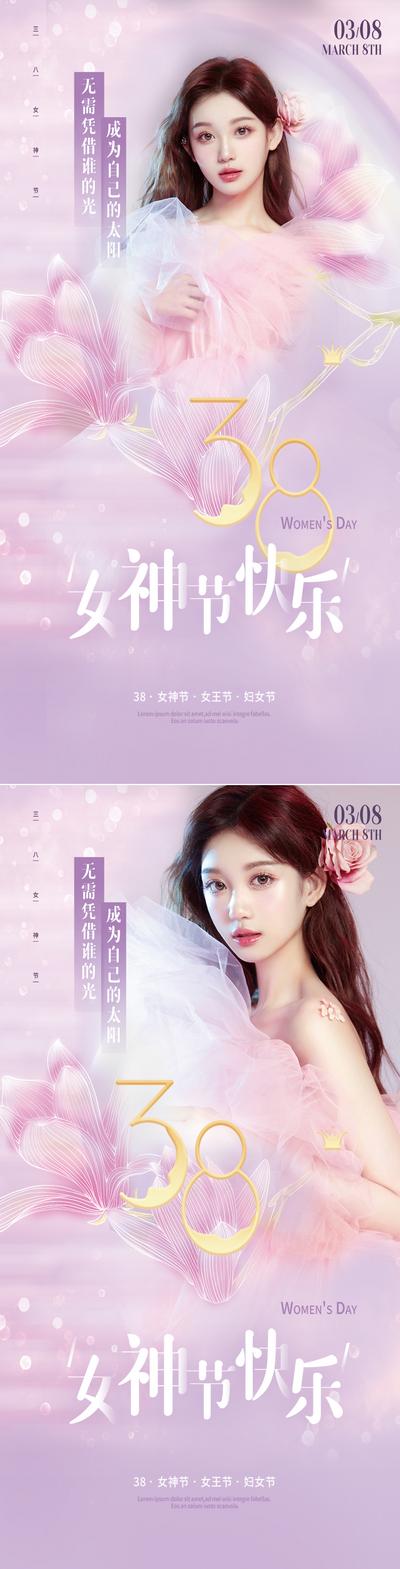 南门网 广告 海报 医美 妇女节 38 女神节 系列 优雅